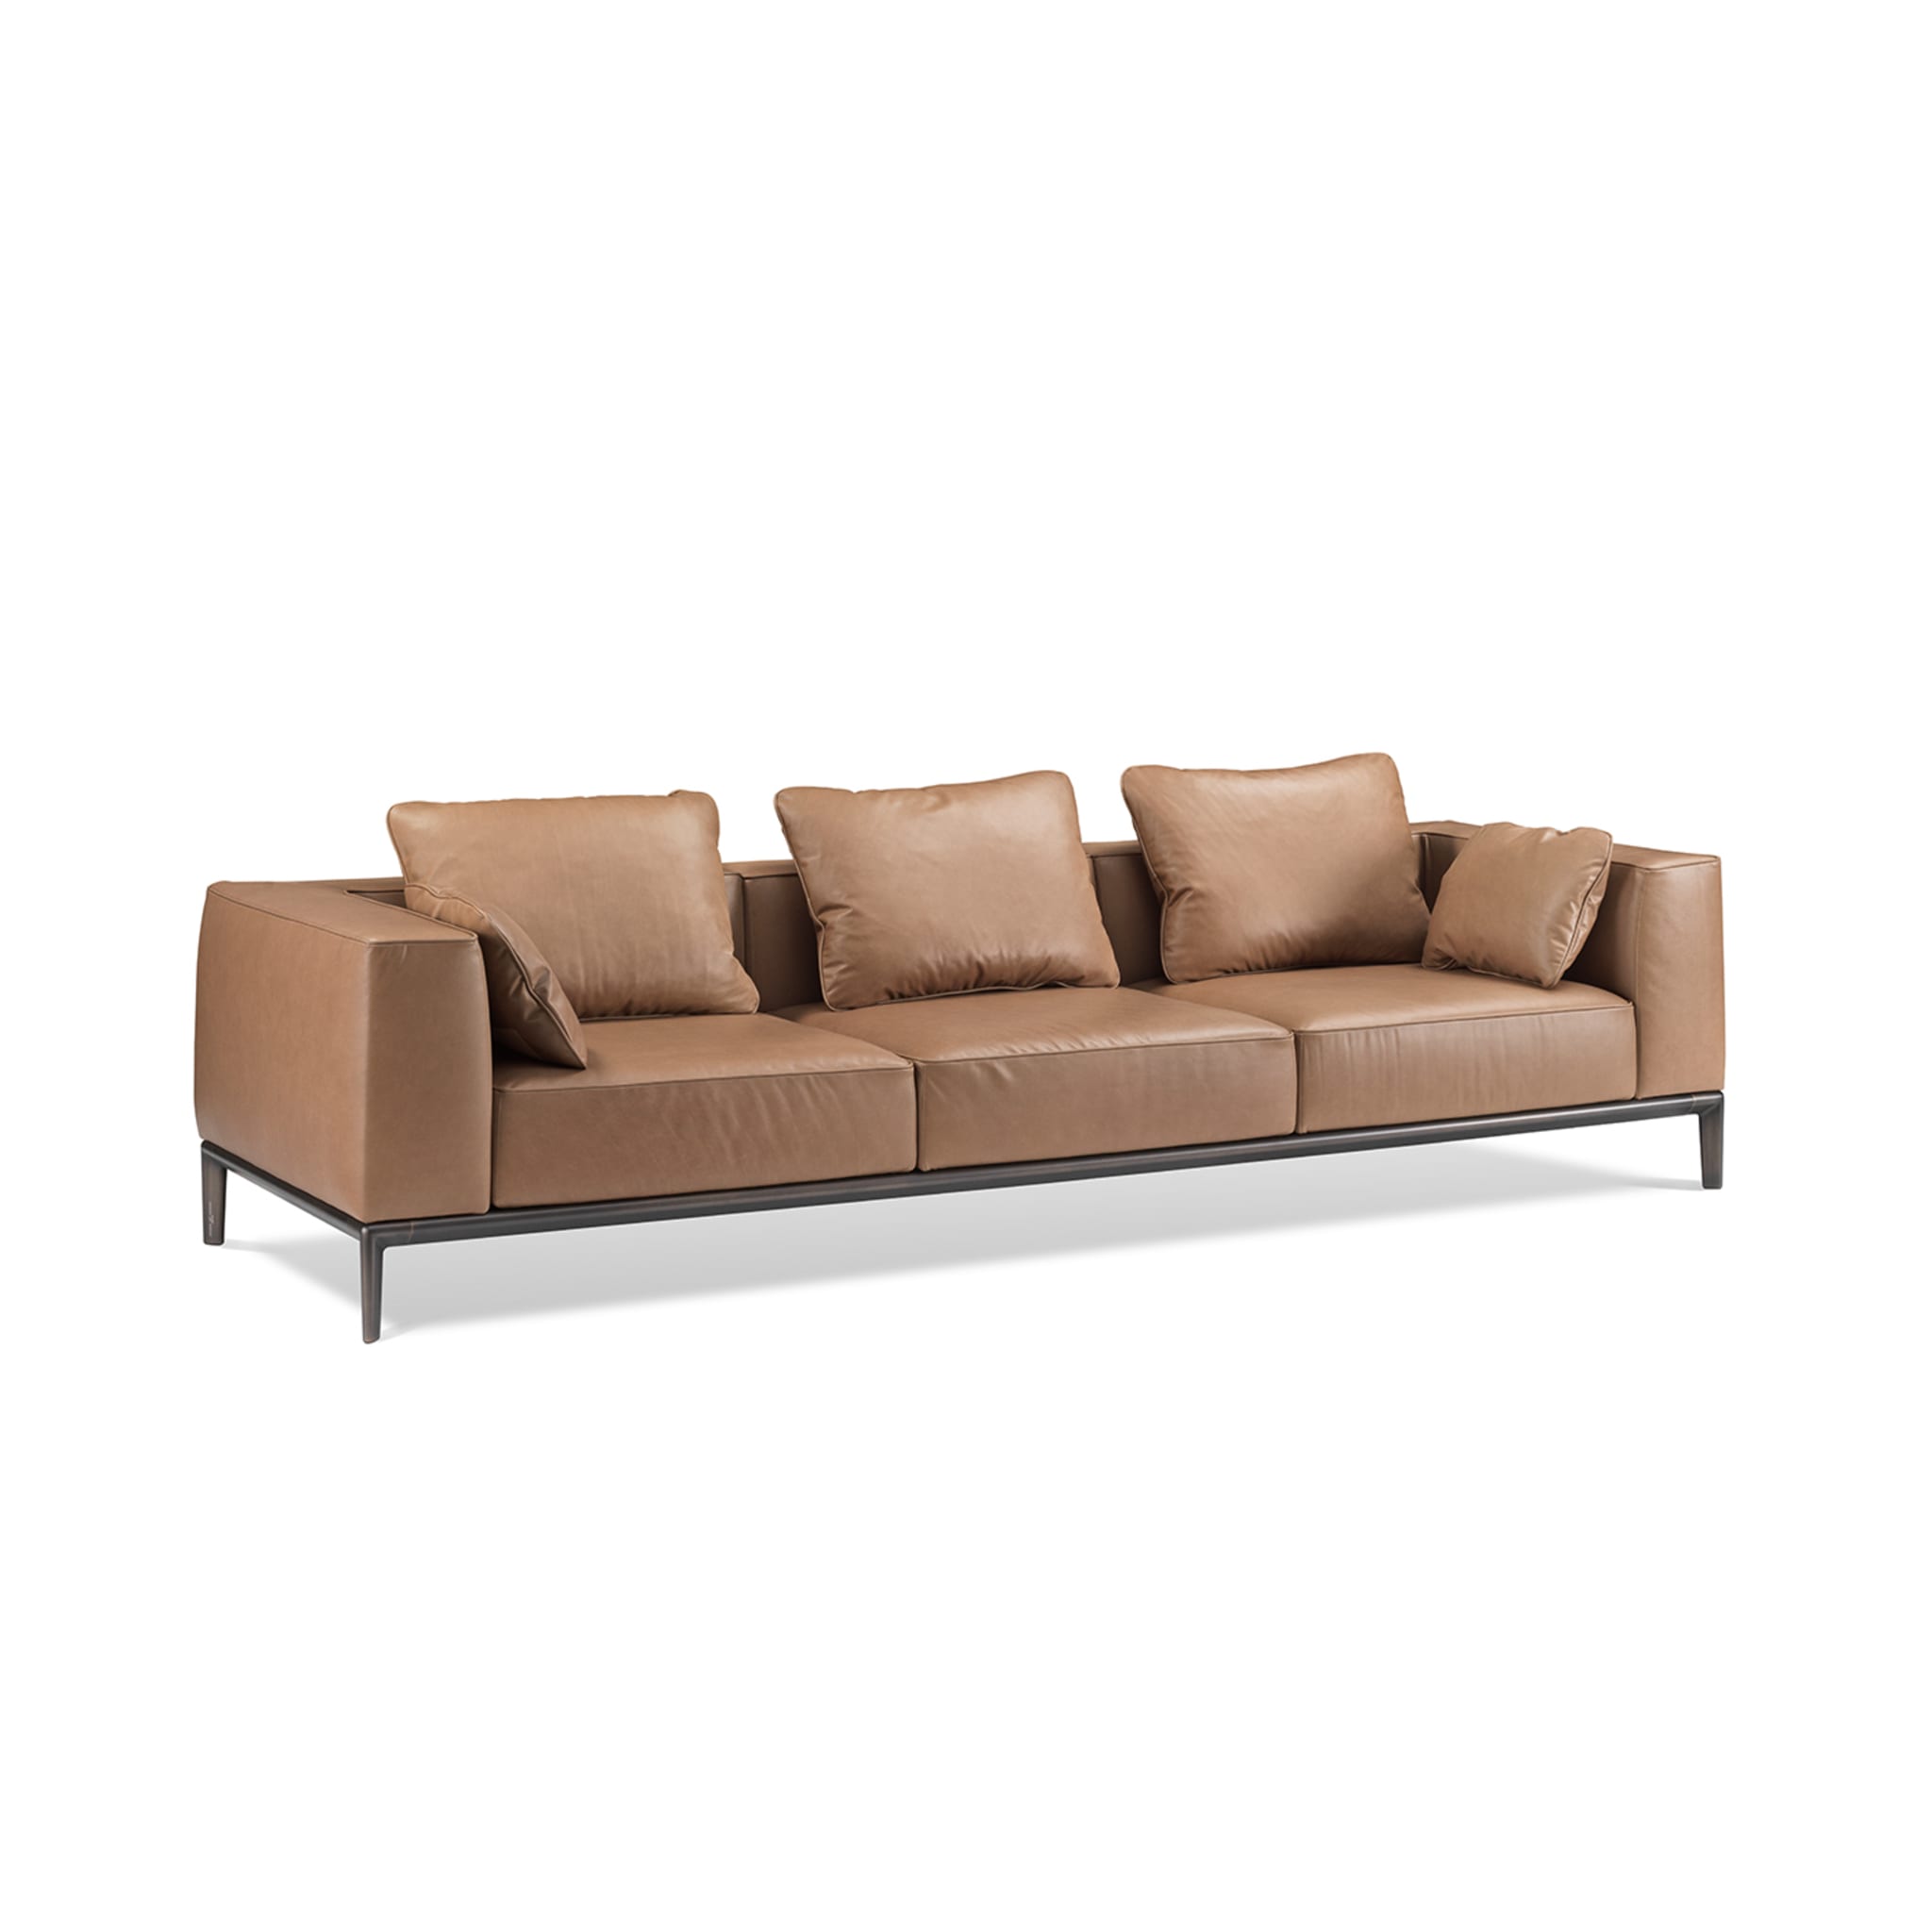 Milo Brown Leather Sofa by Stefano Giovannoni - Alternative view 4